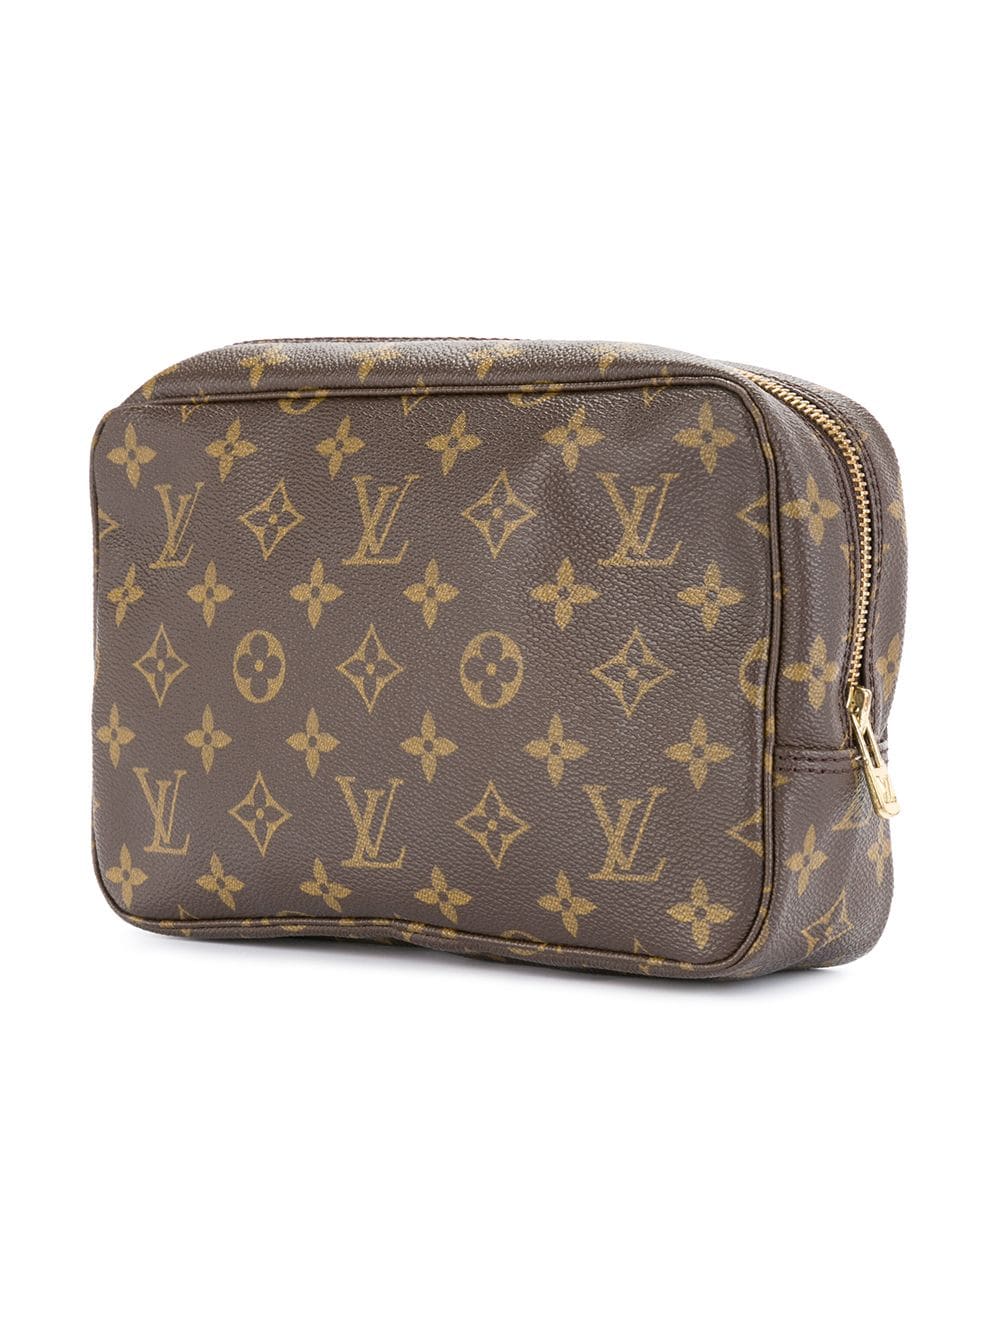 Auth Louis Vuitton Monogram Trousse Toilette 23 Clutch Hand Bag